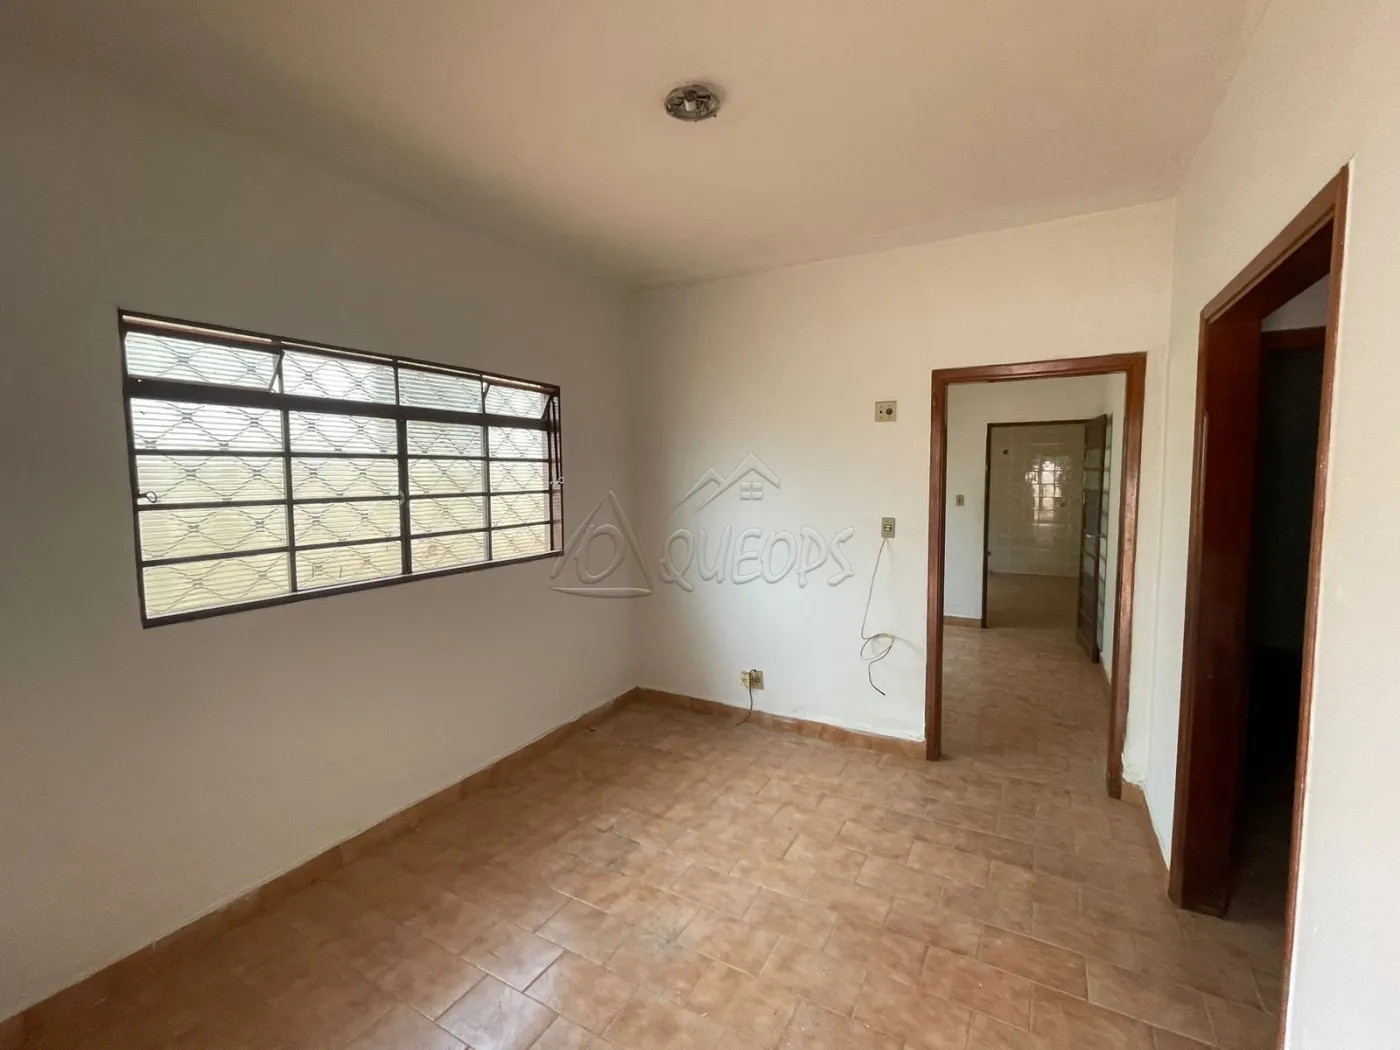 Alugar Casa / Padrão em Barretos R$ 1.400,00 - Foto 5